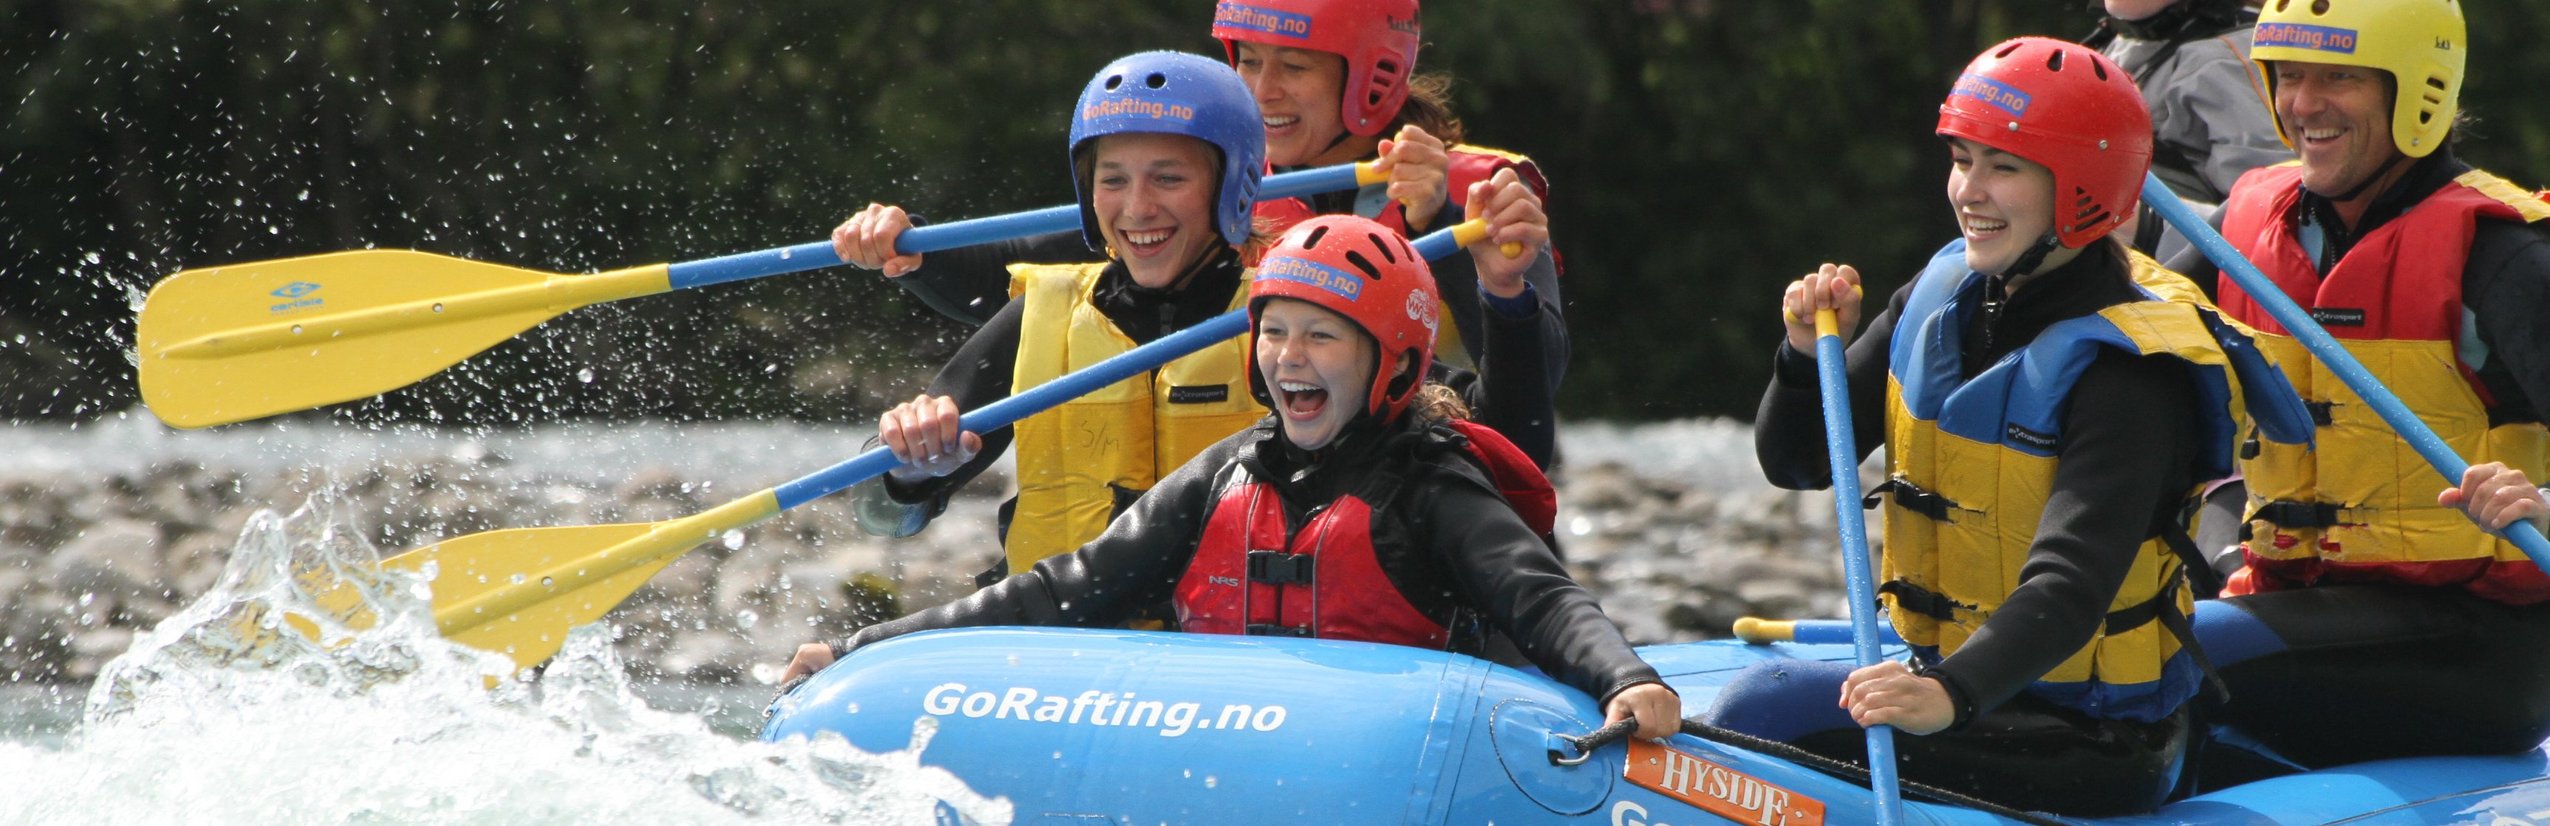 Norwegen mit Kindern - Norwegen for family - Rafting für die ganze Familie